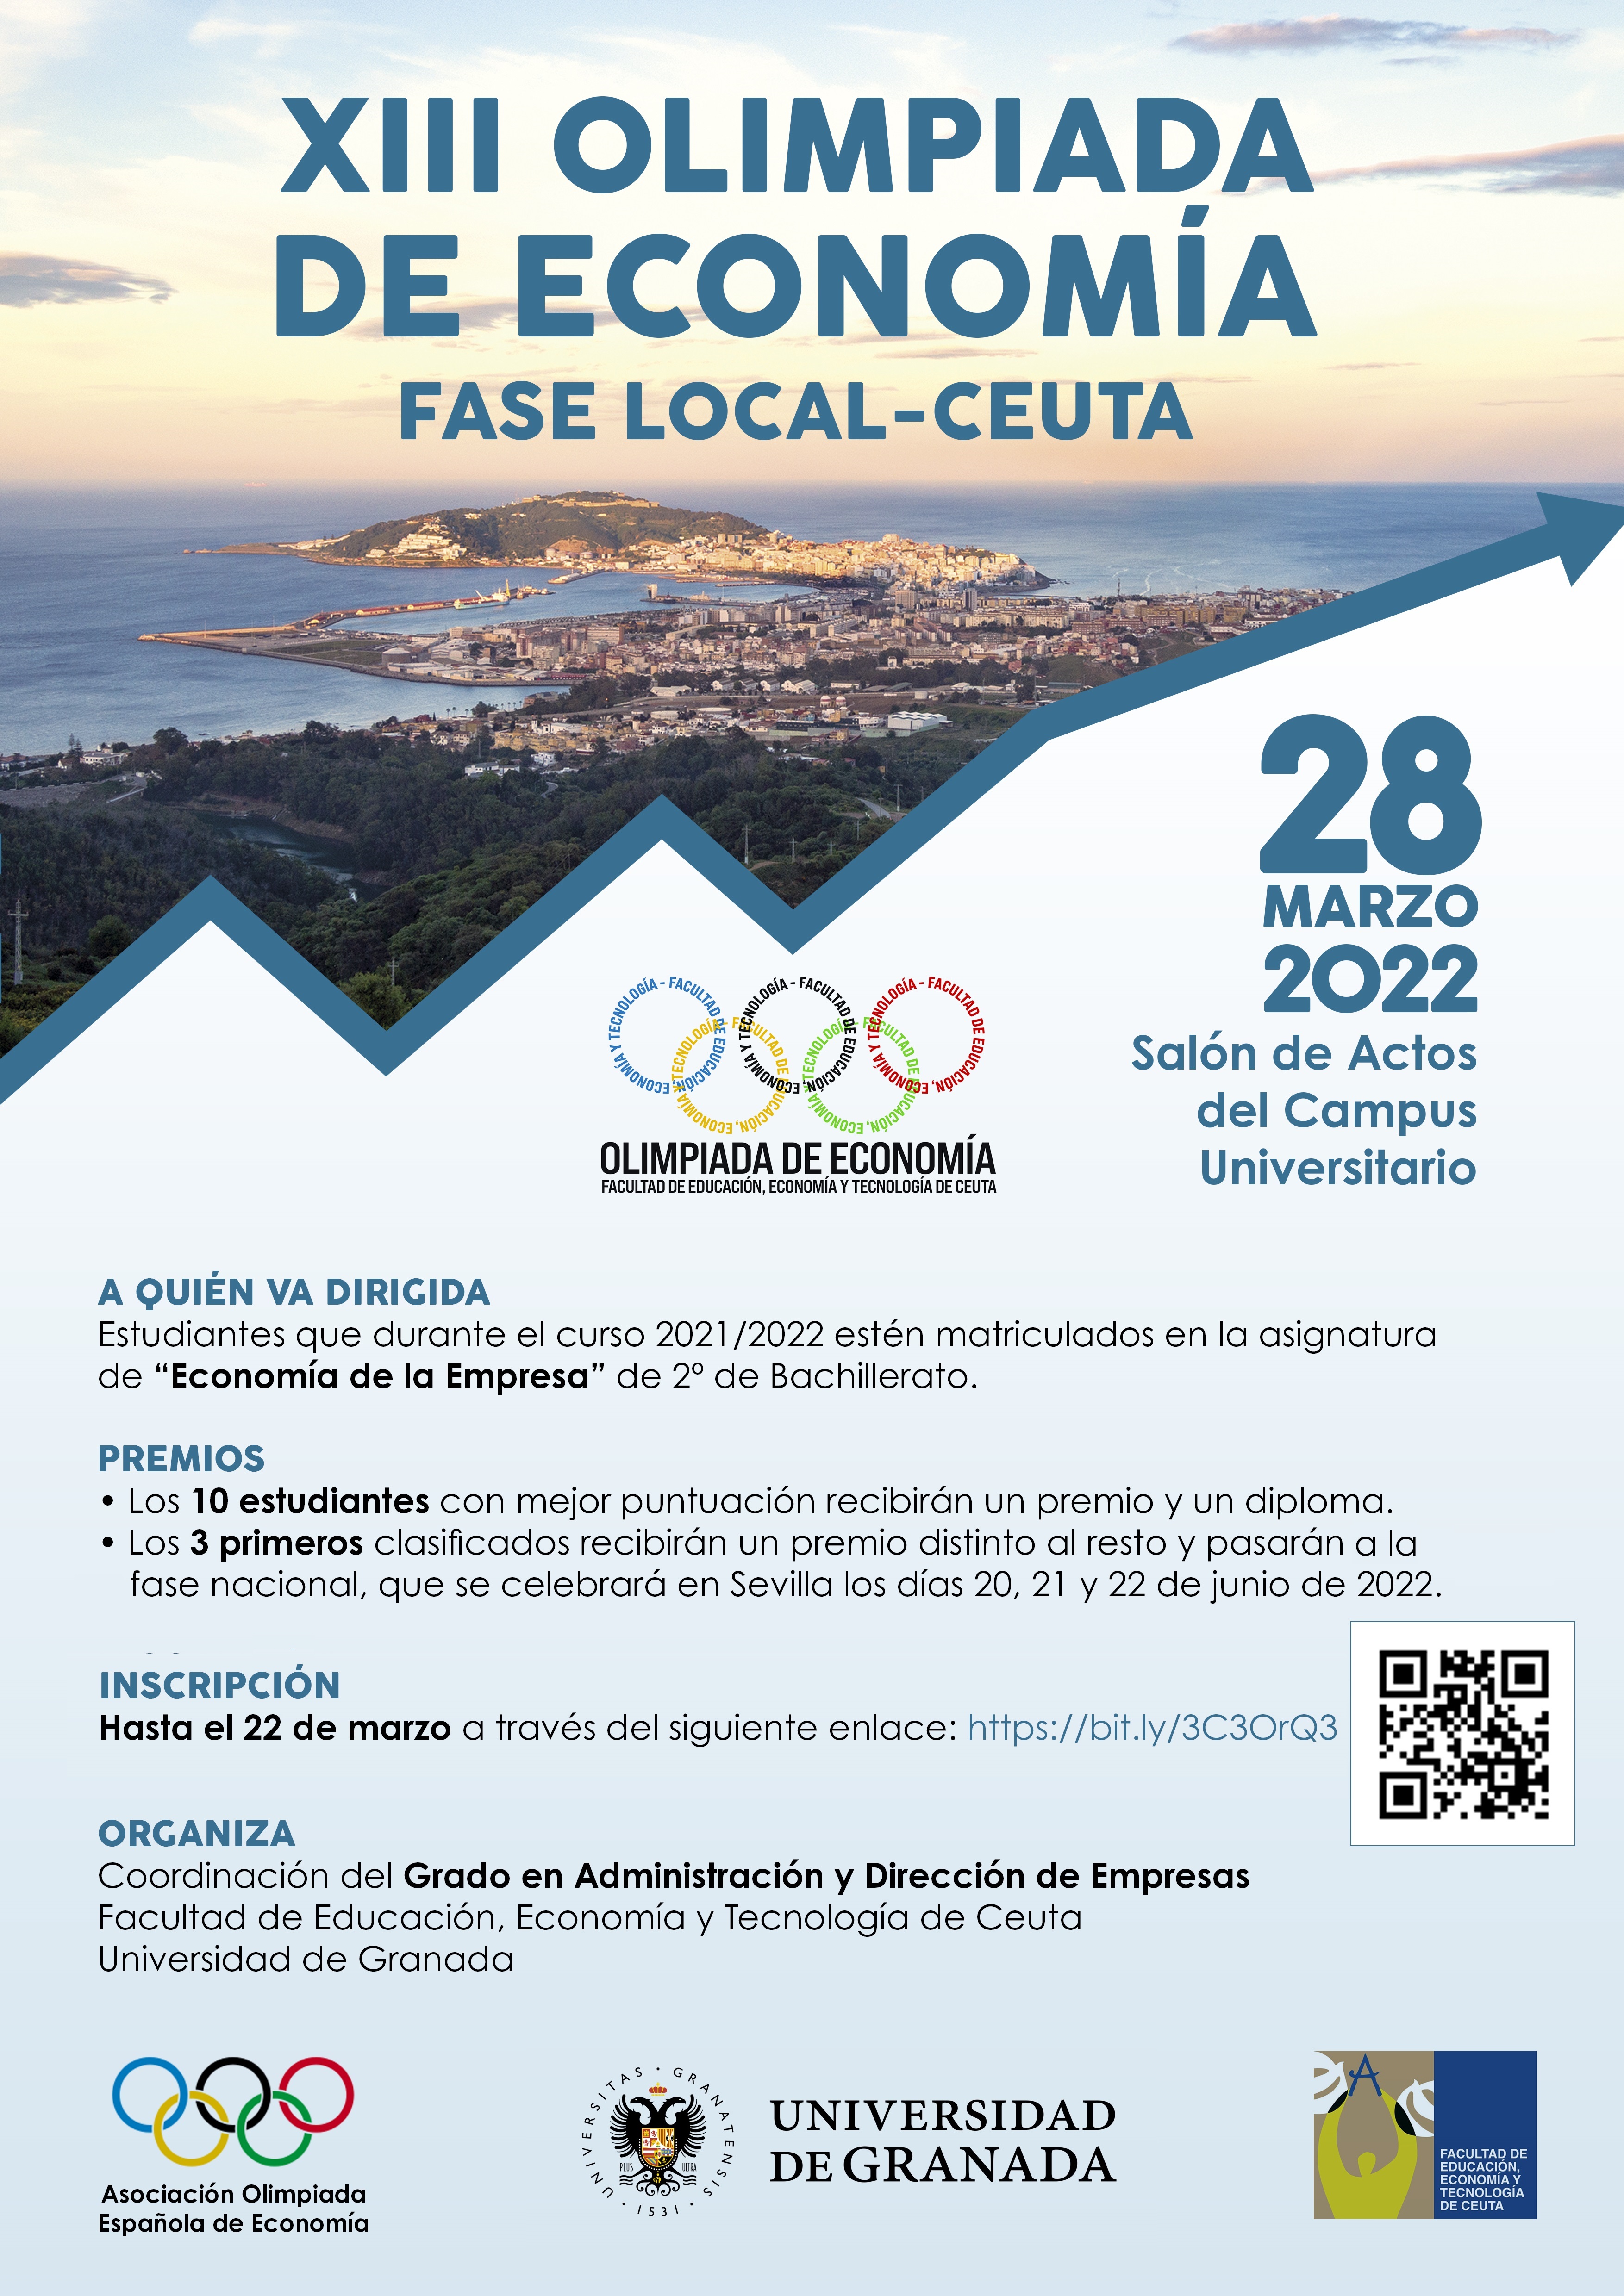 Olimpiada de Economía 2022 – Fase local